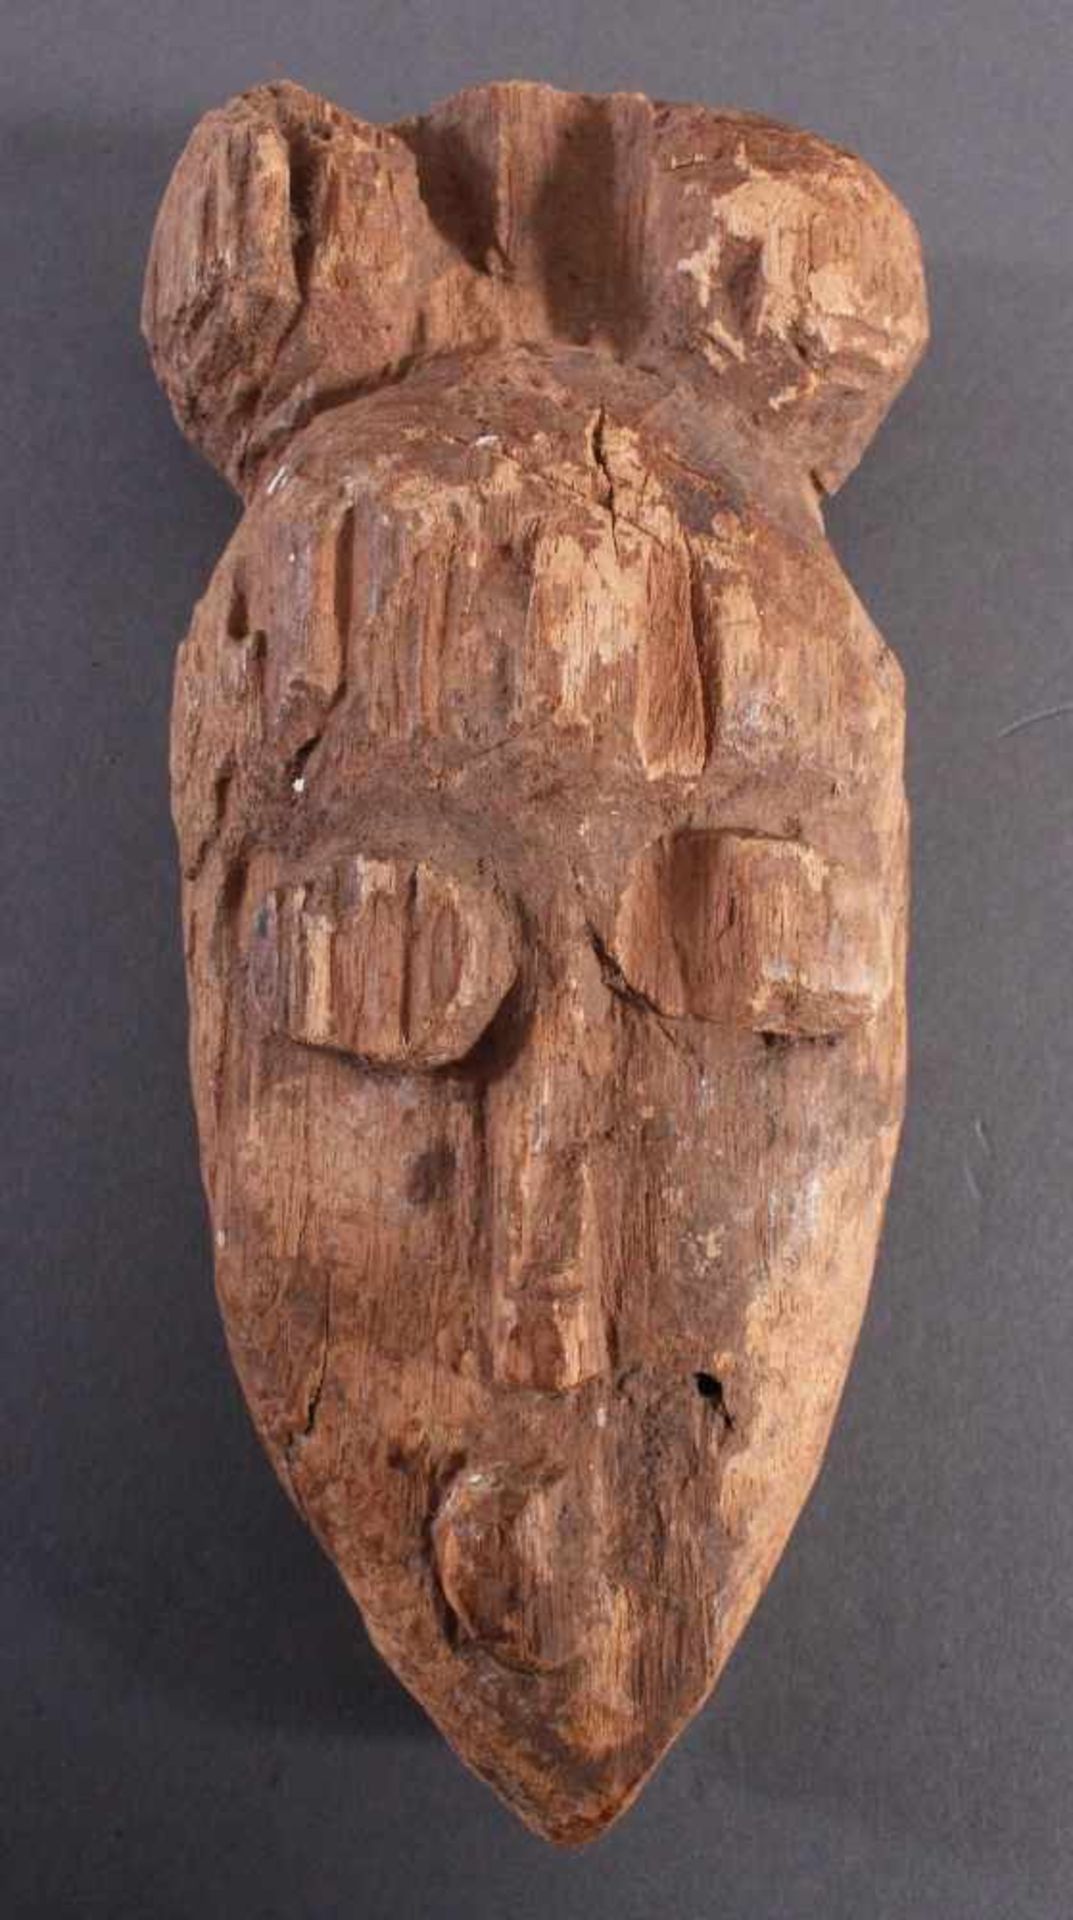 Antike Maske, Baule, Elfenbeinküste 1. Hälfte 20. Jh.Helles Holz, geschnitzt, Fehlstellen, ca. 6 x